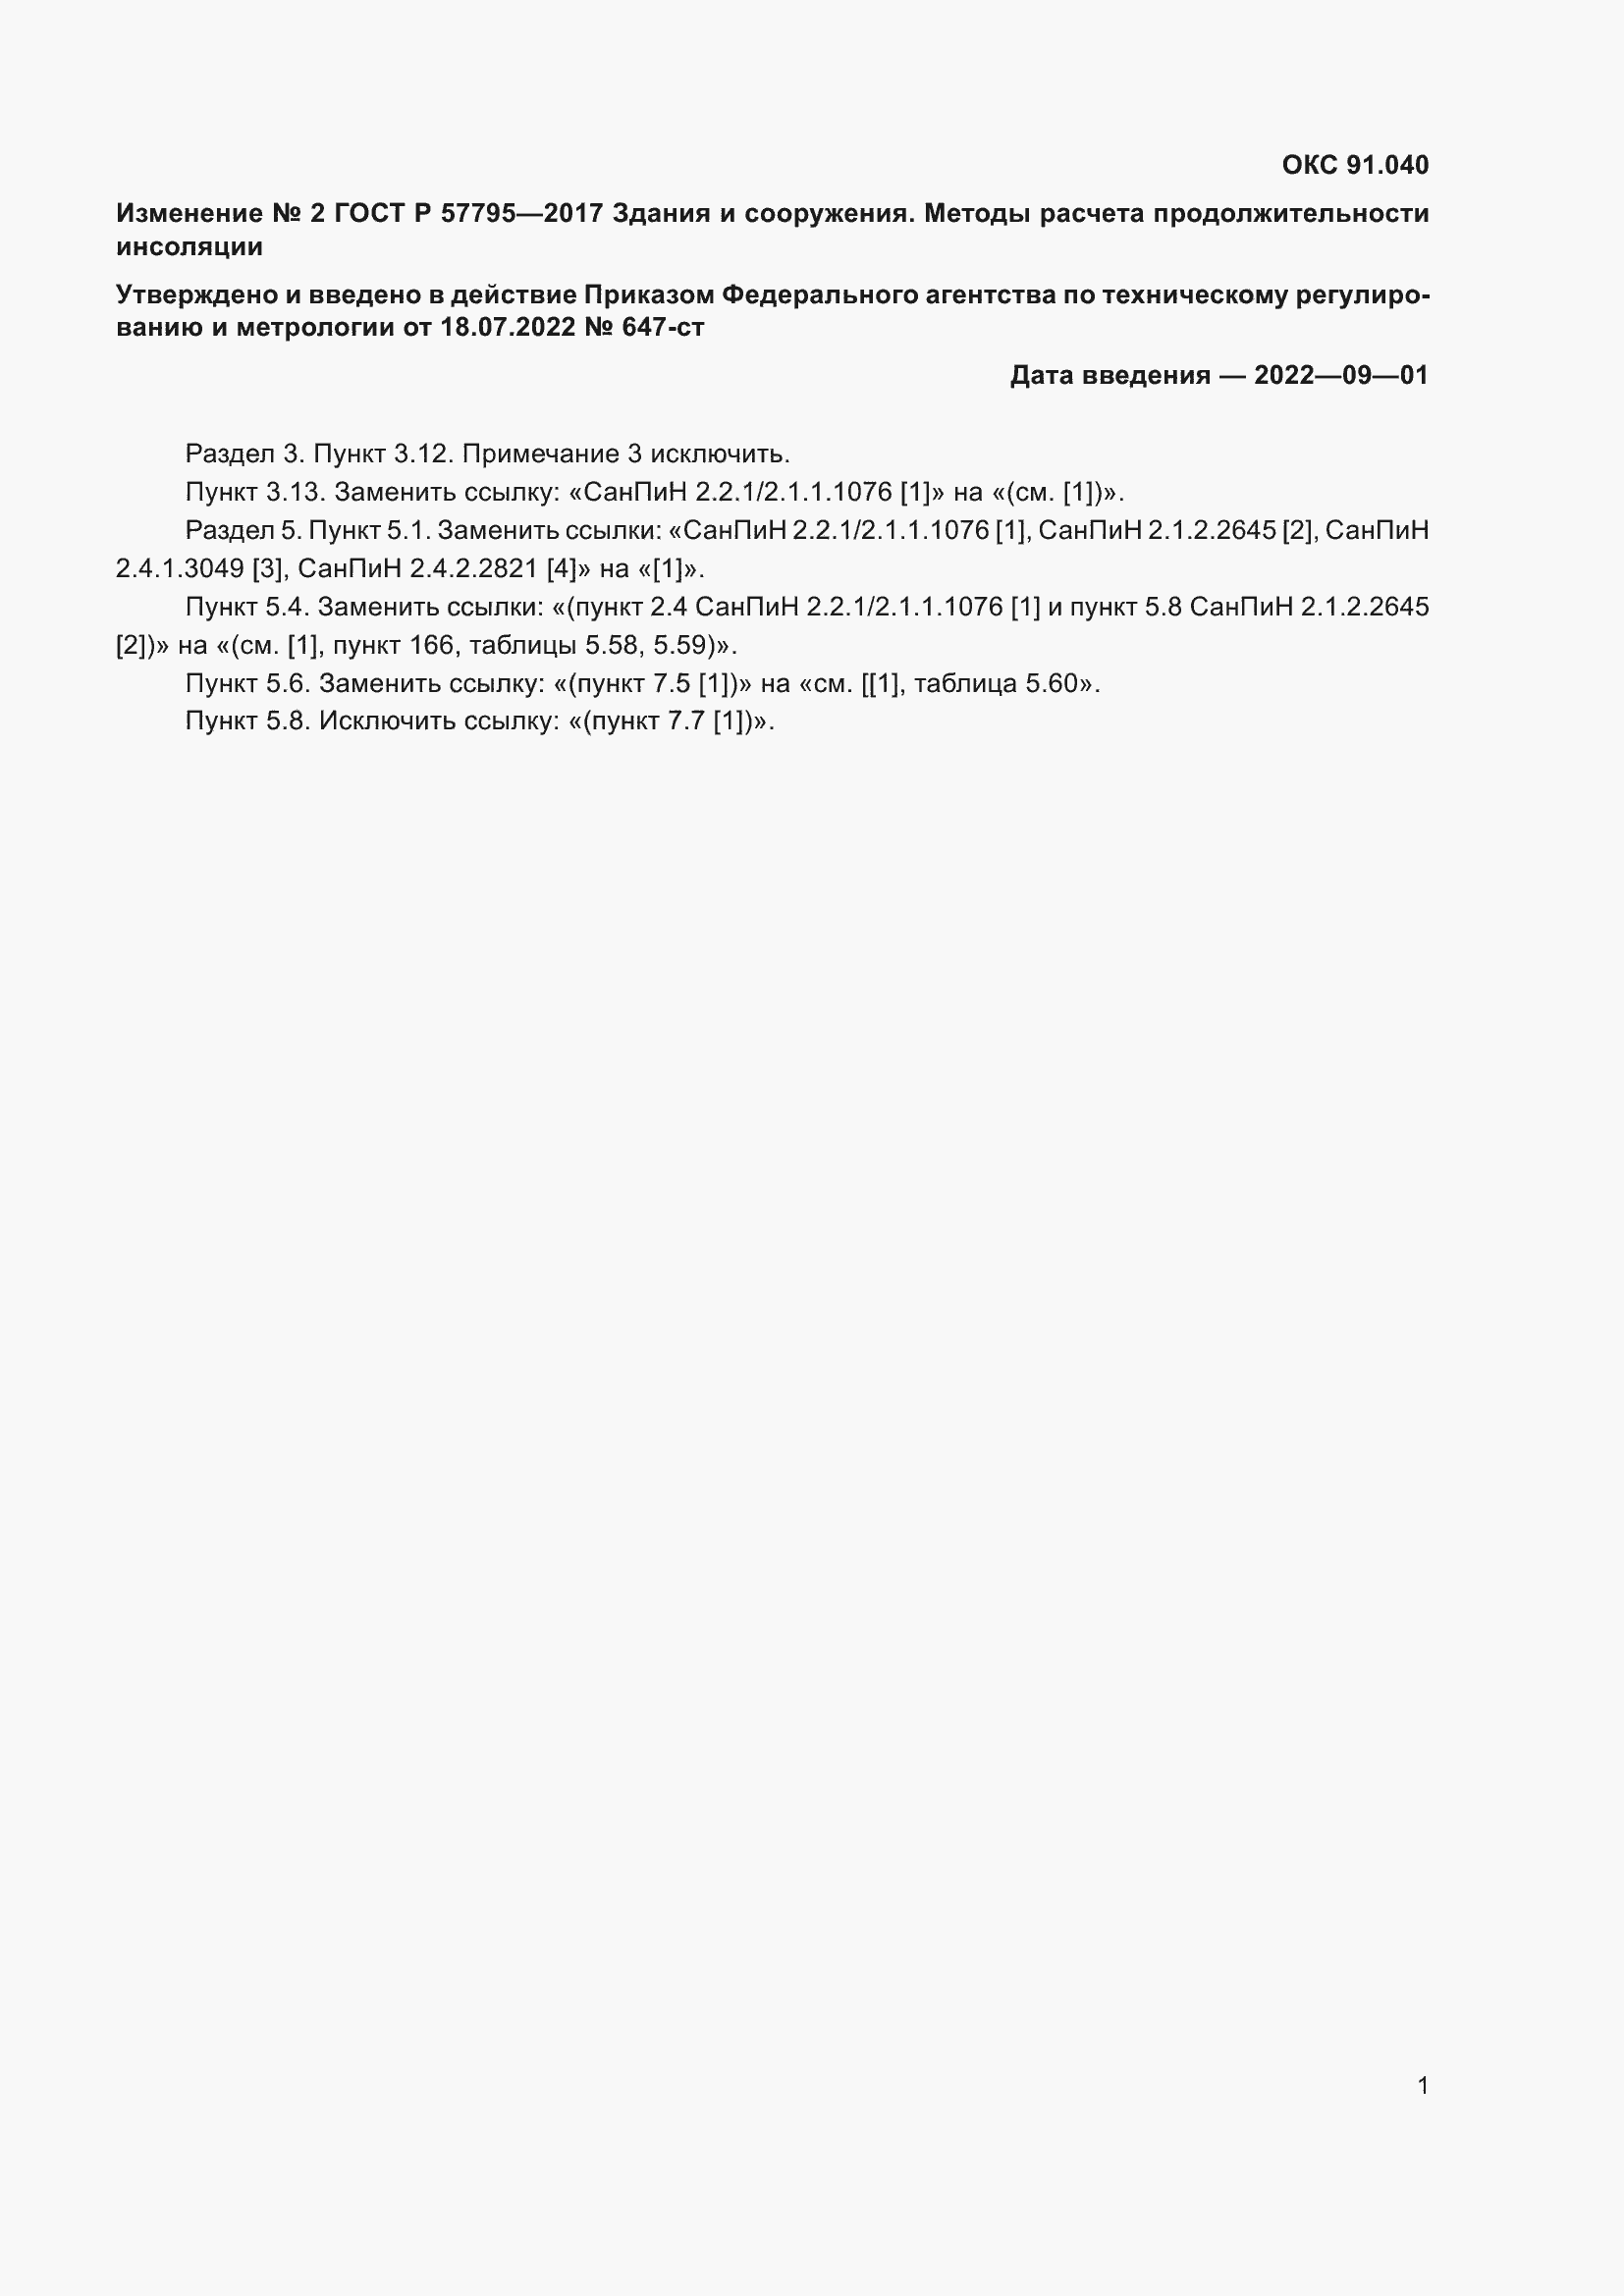 Изменение №2 к ГОСТ Р 57795-2017